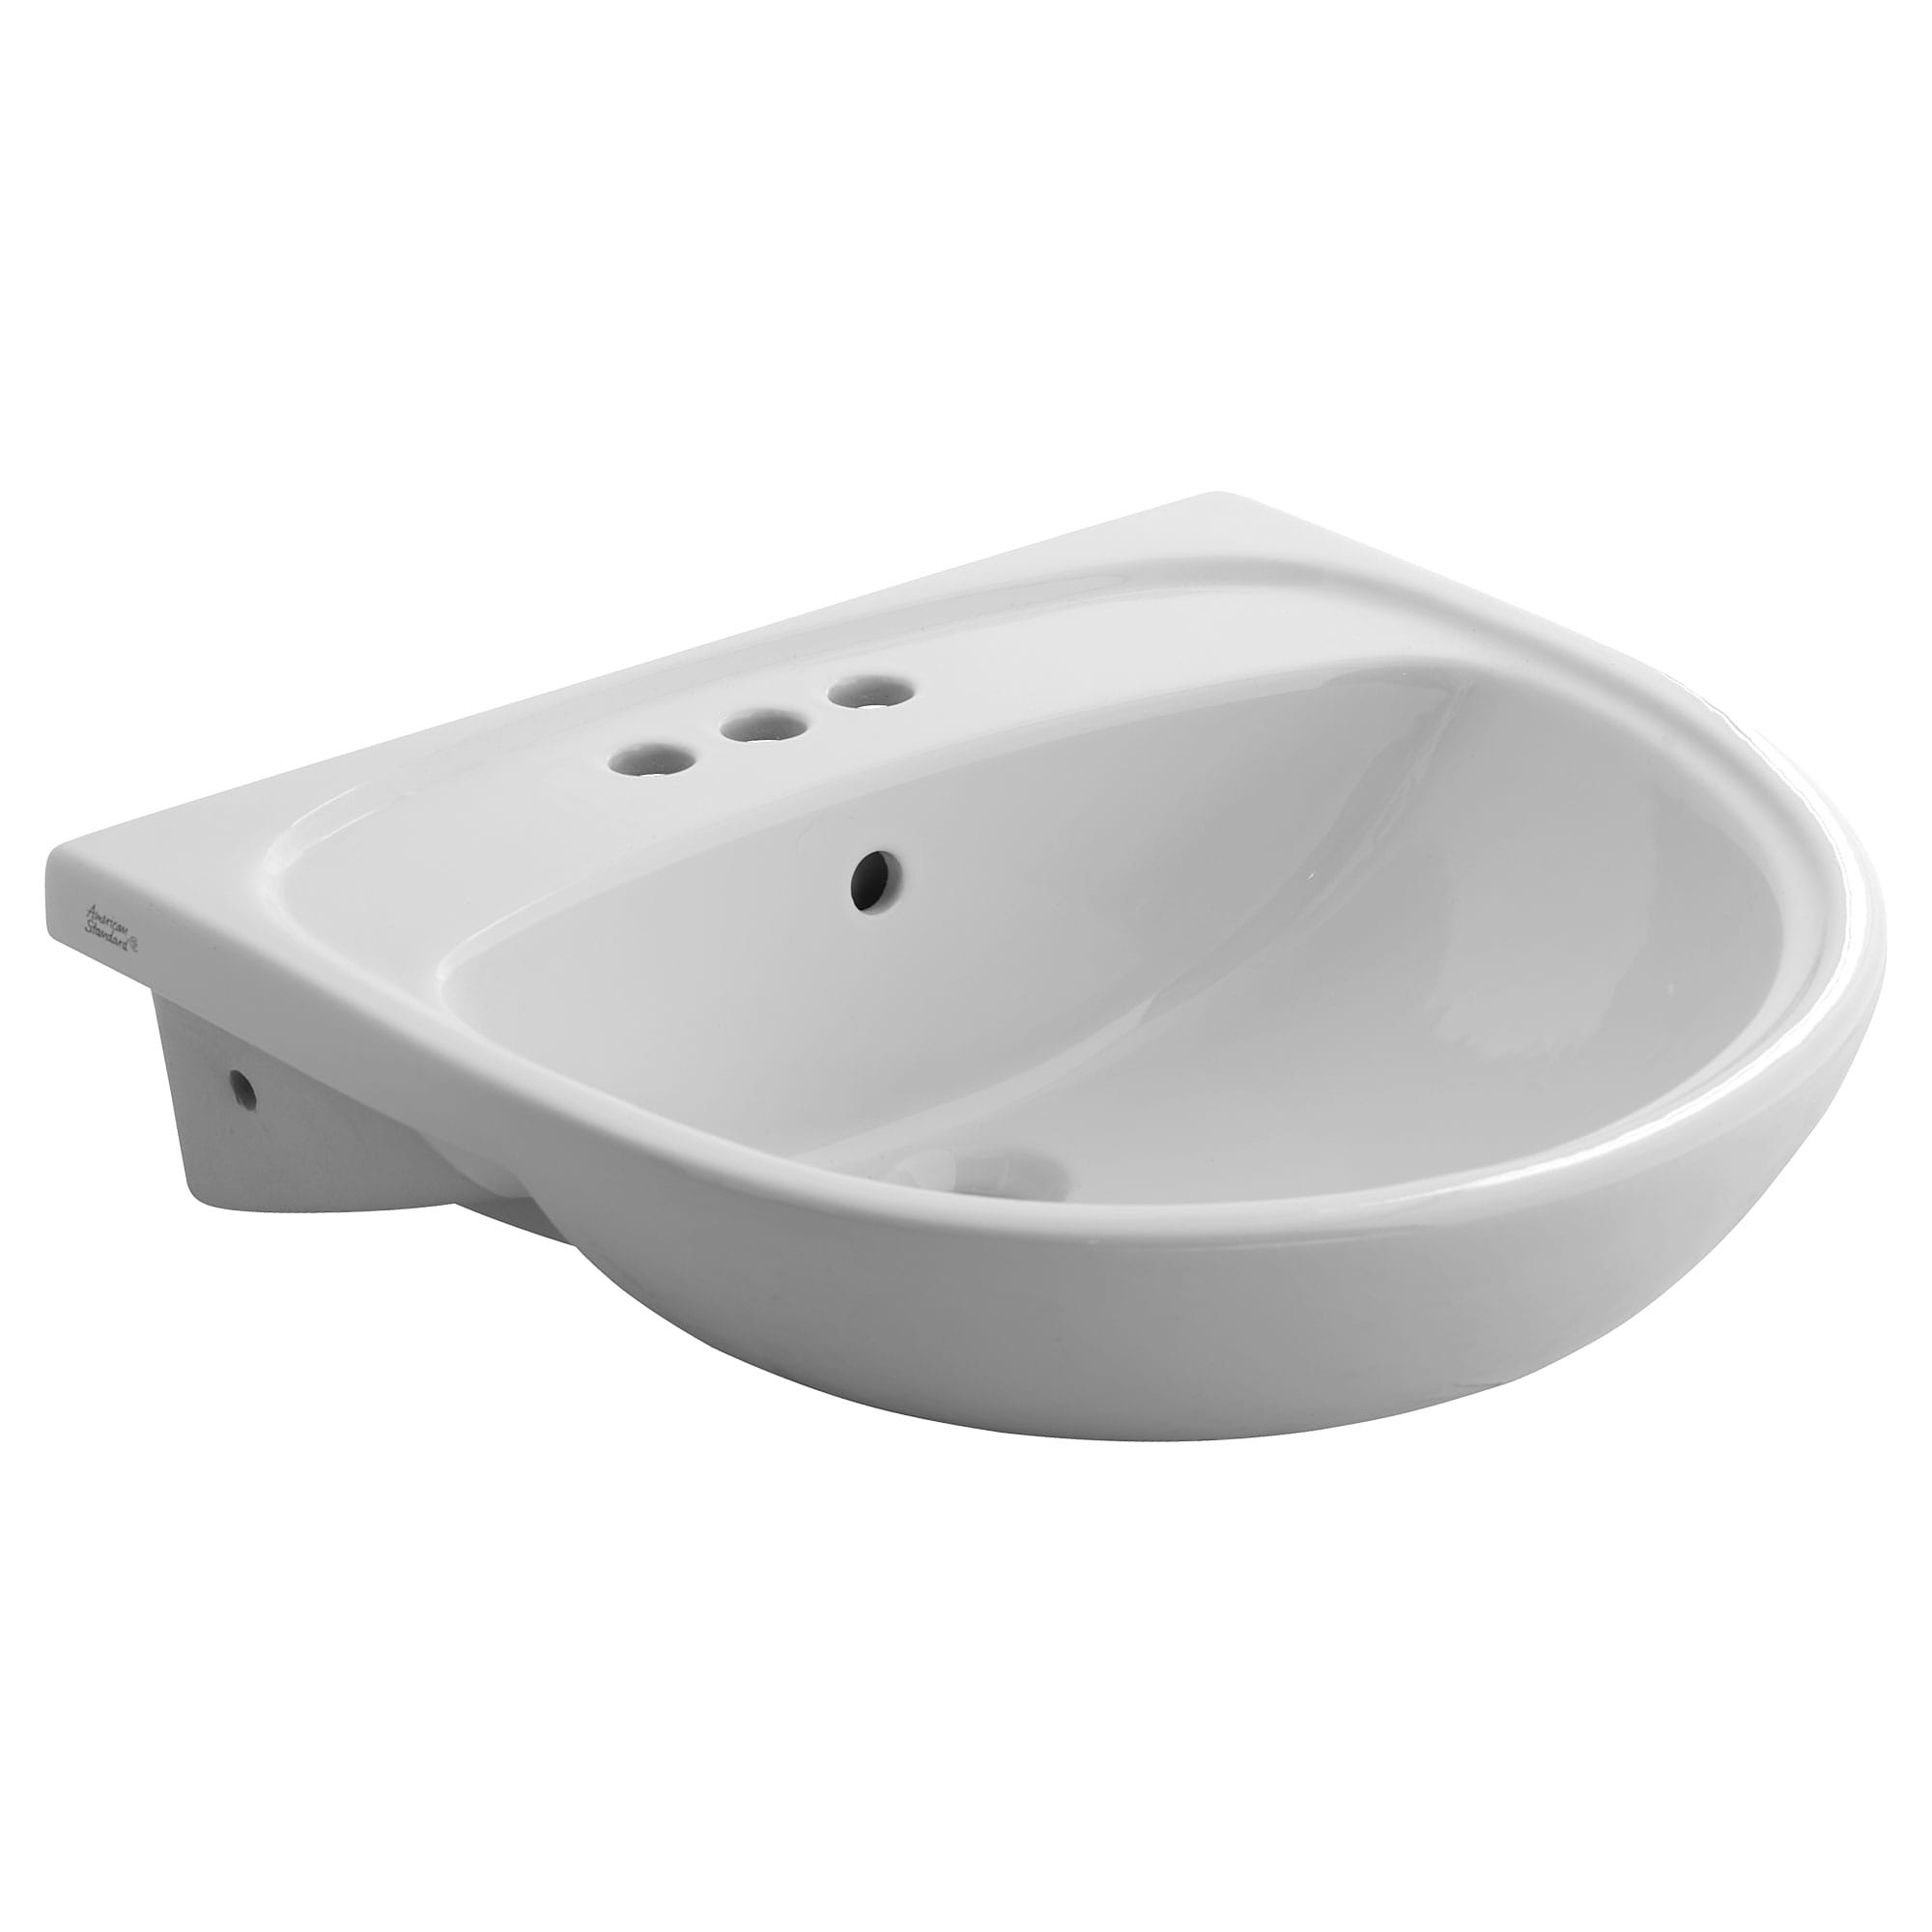 Mezzo® Semi-Countertop Sink With 4-Inch Centerset